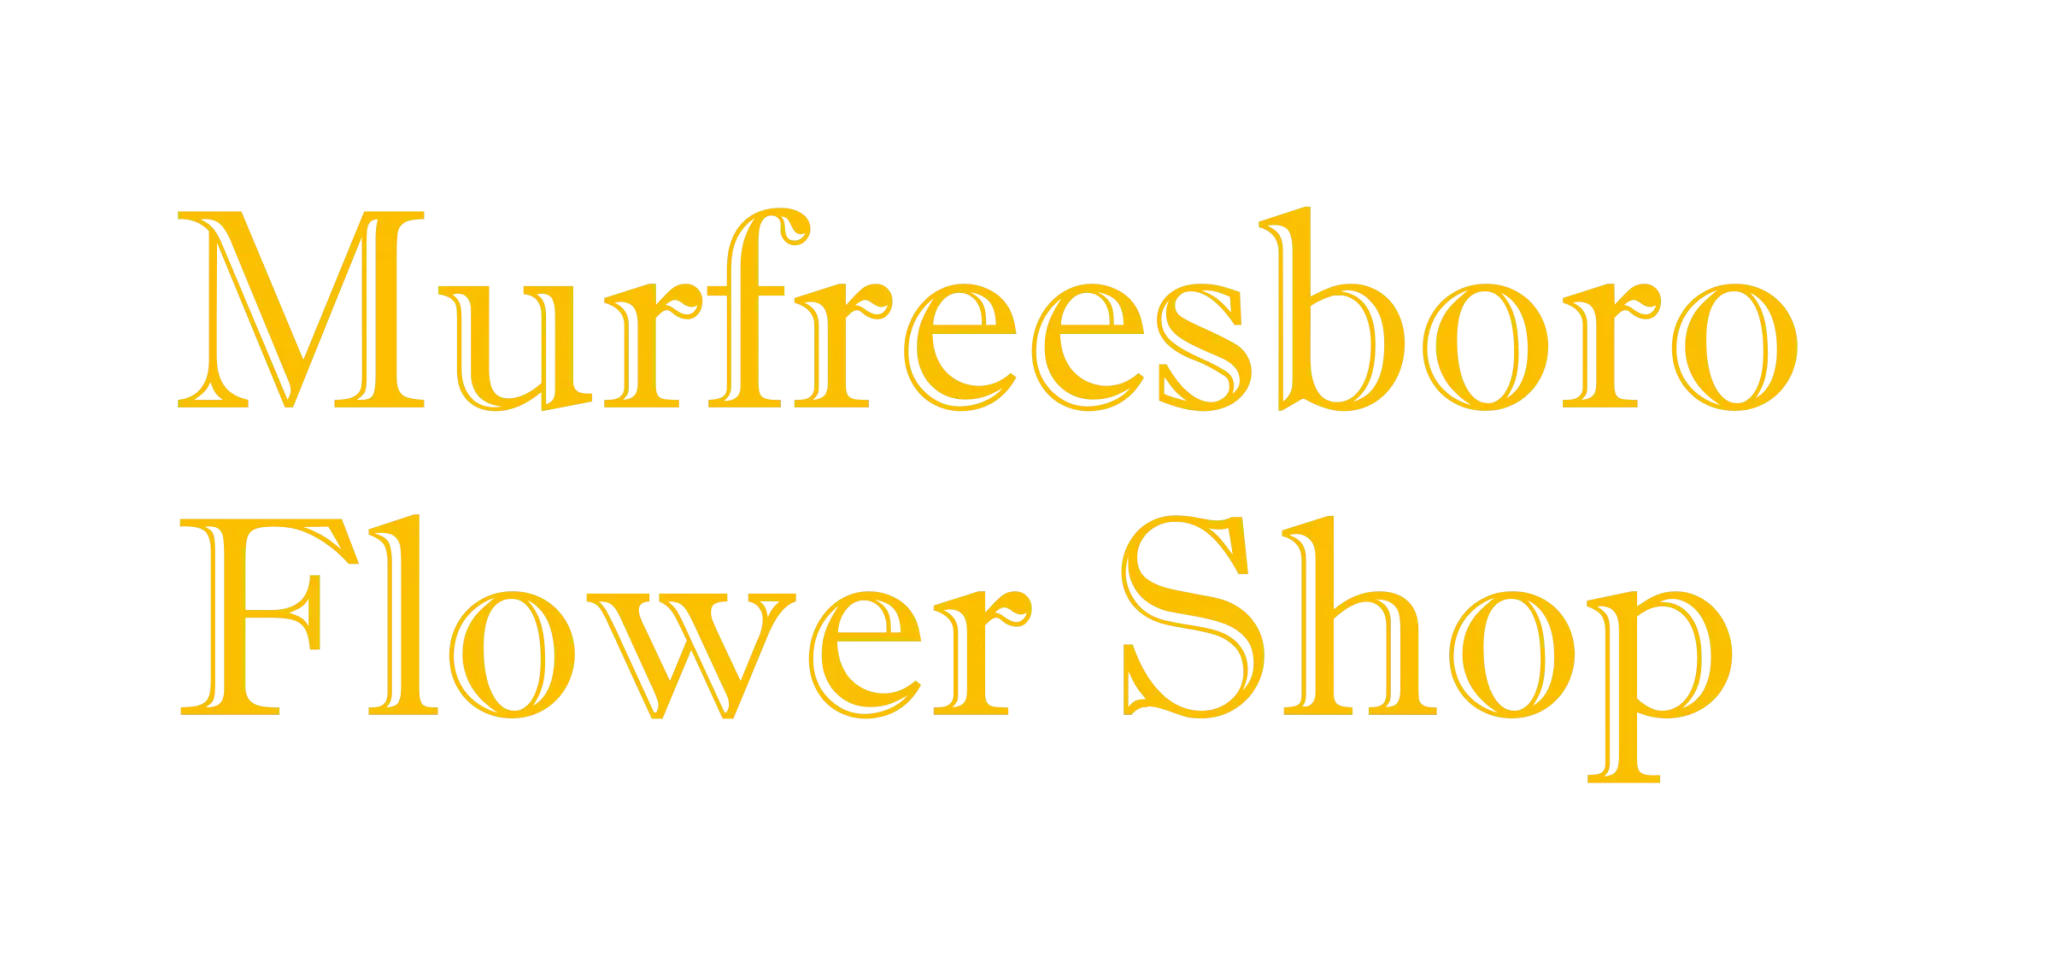 Murfreesboro Flower Shop